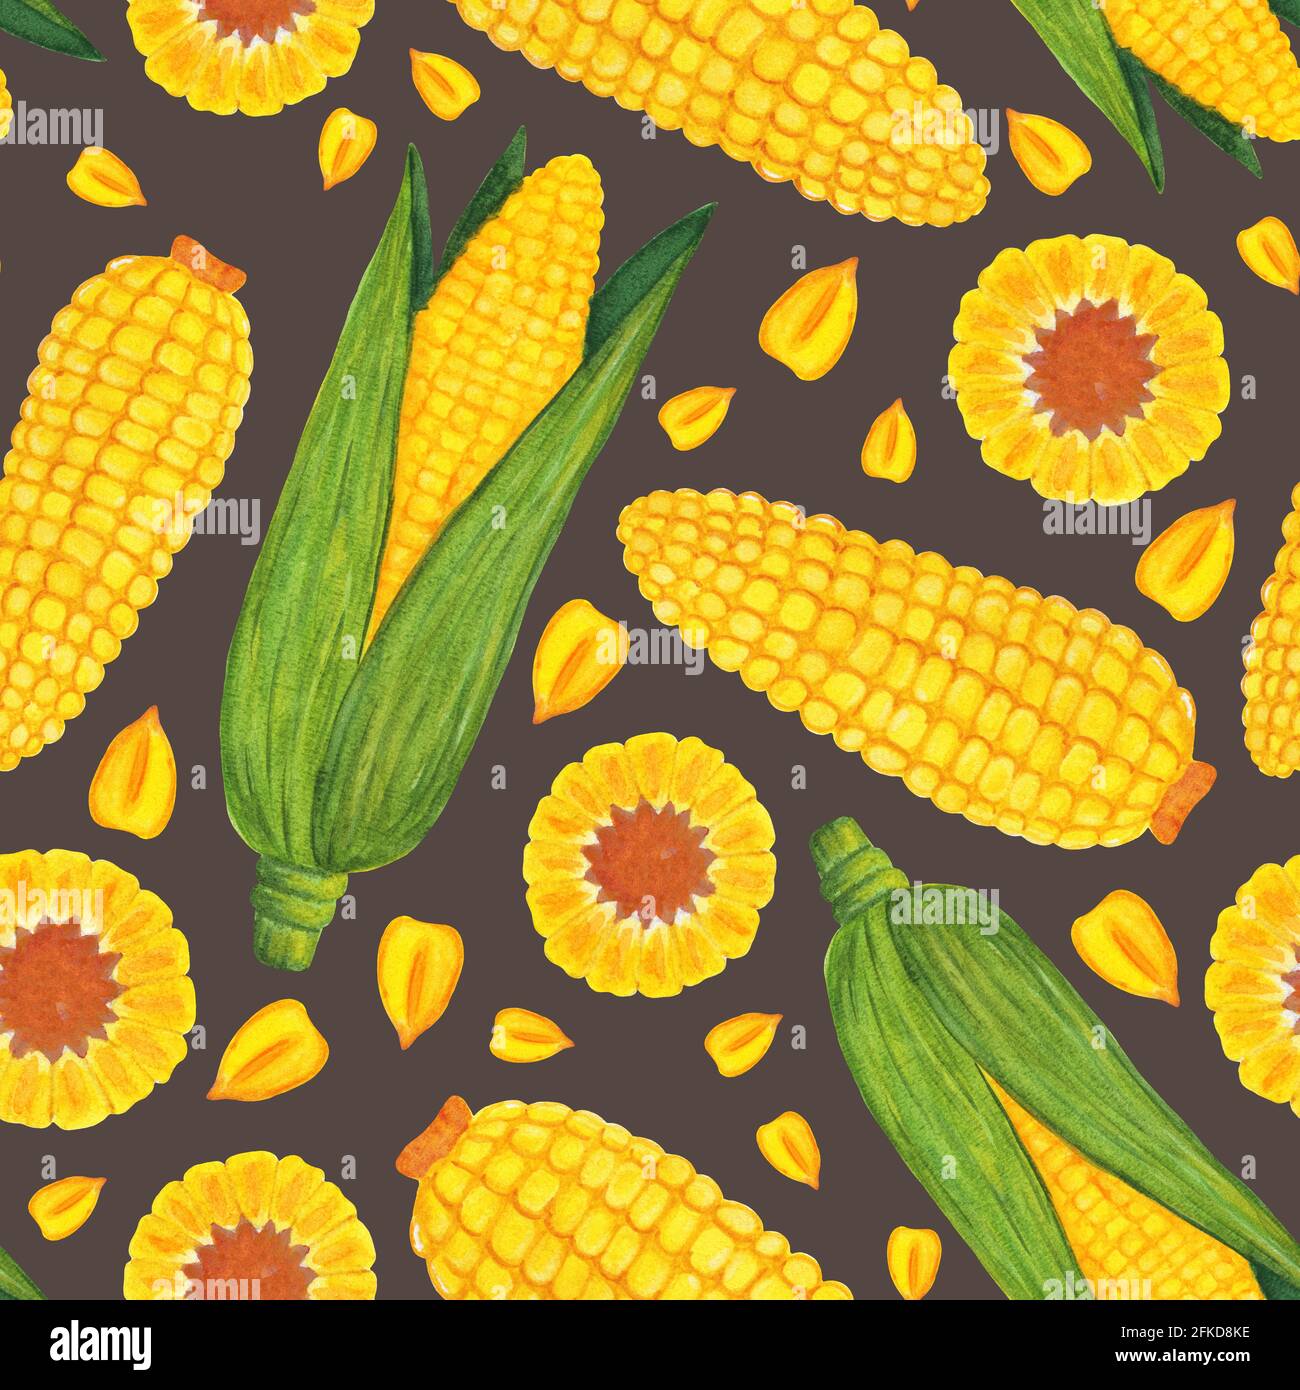 24 cajas amarillas de palomitas de maíz de dibujos animados, decoración de  cumpleaños con temática amarilla